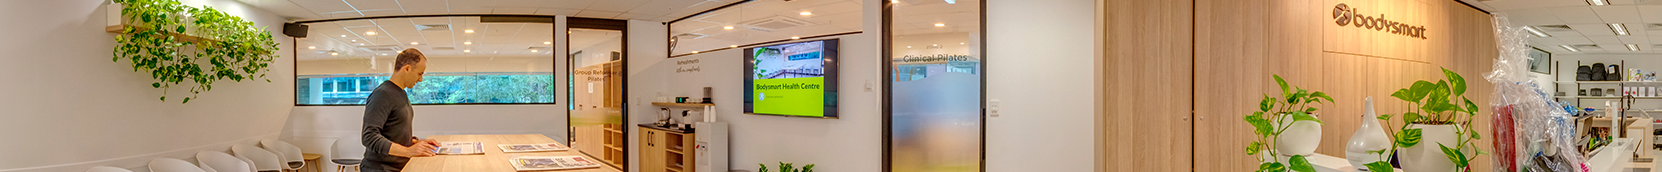 Health Centre Perth